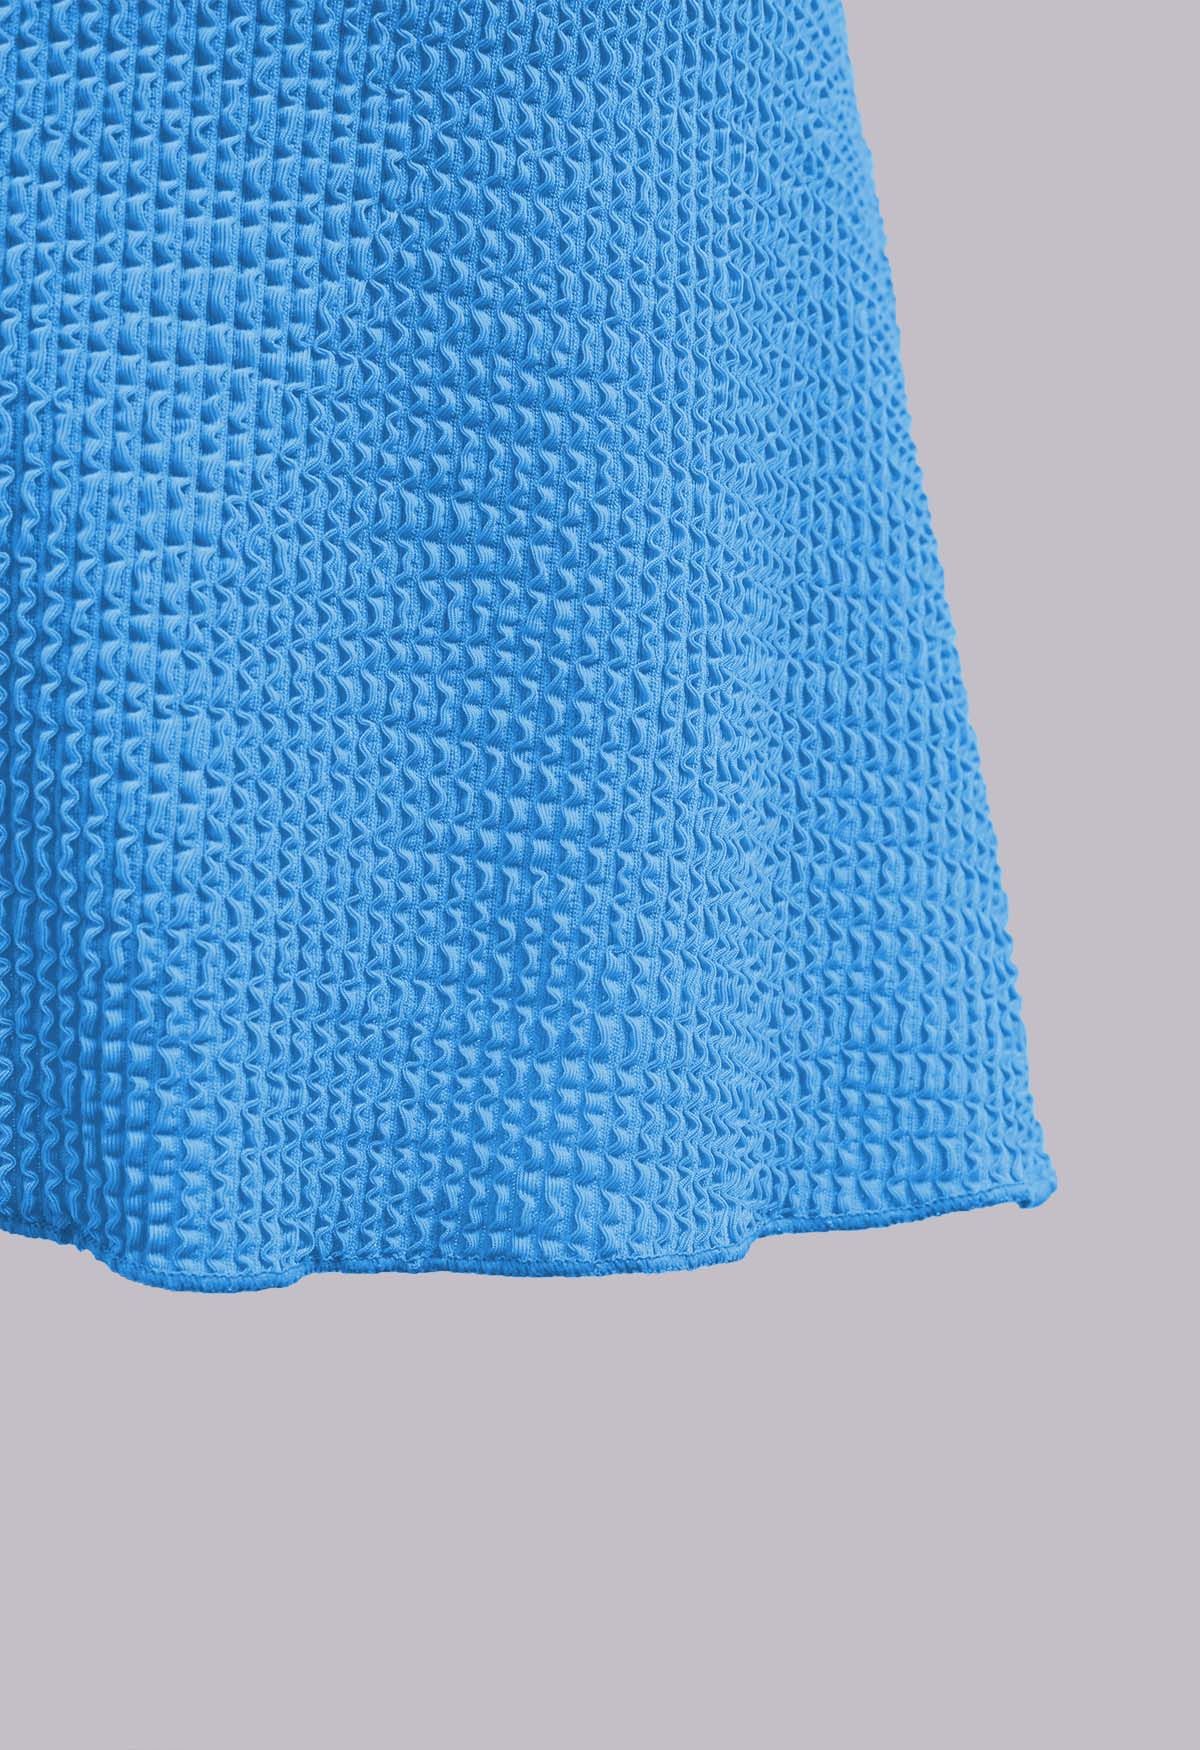 Three-Piece Wavy Texture Twist Bikini Set in Blue